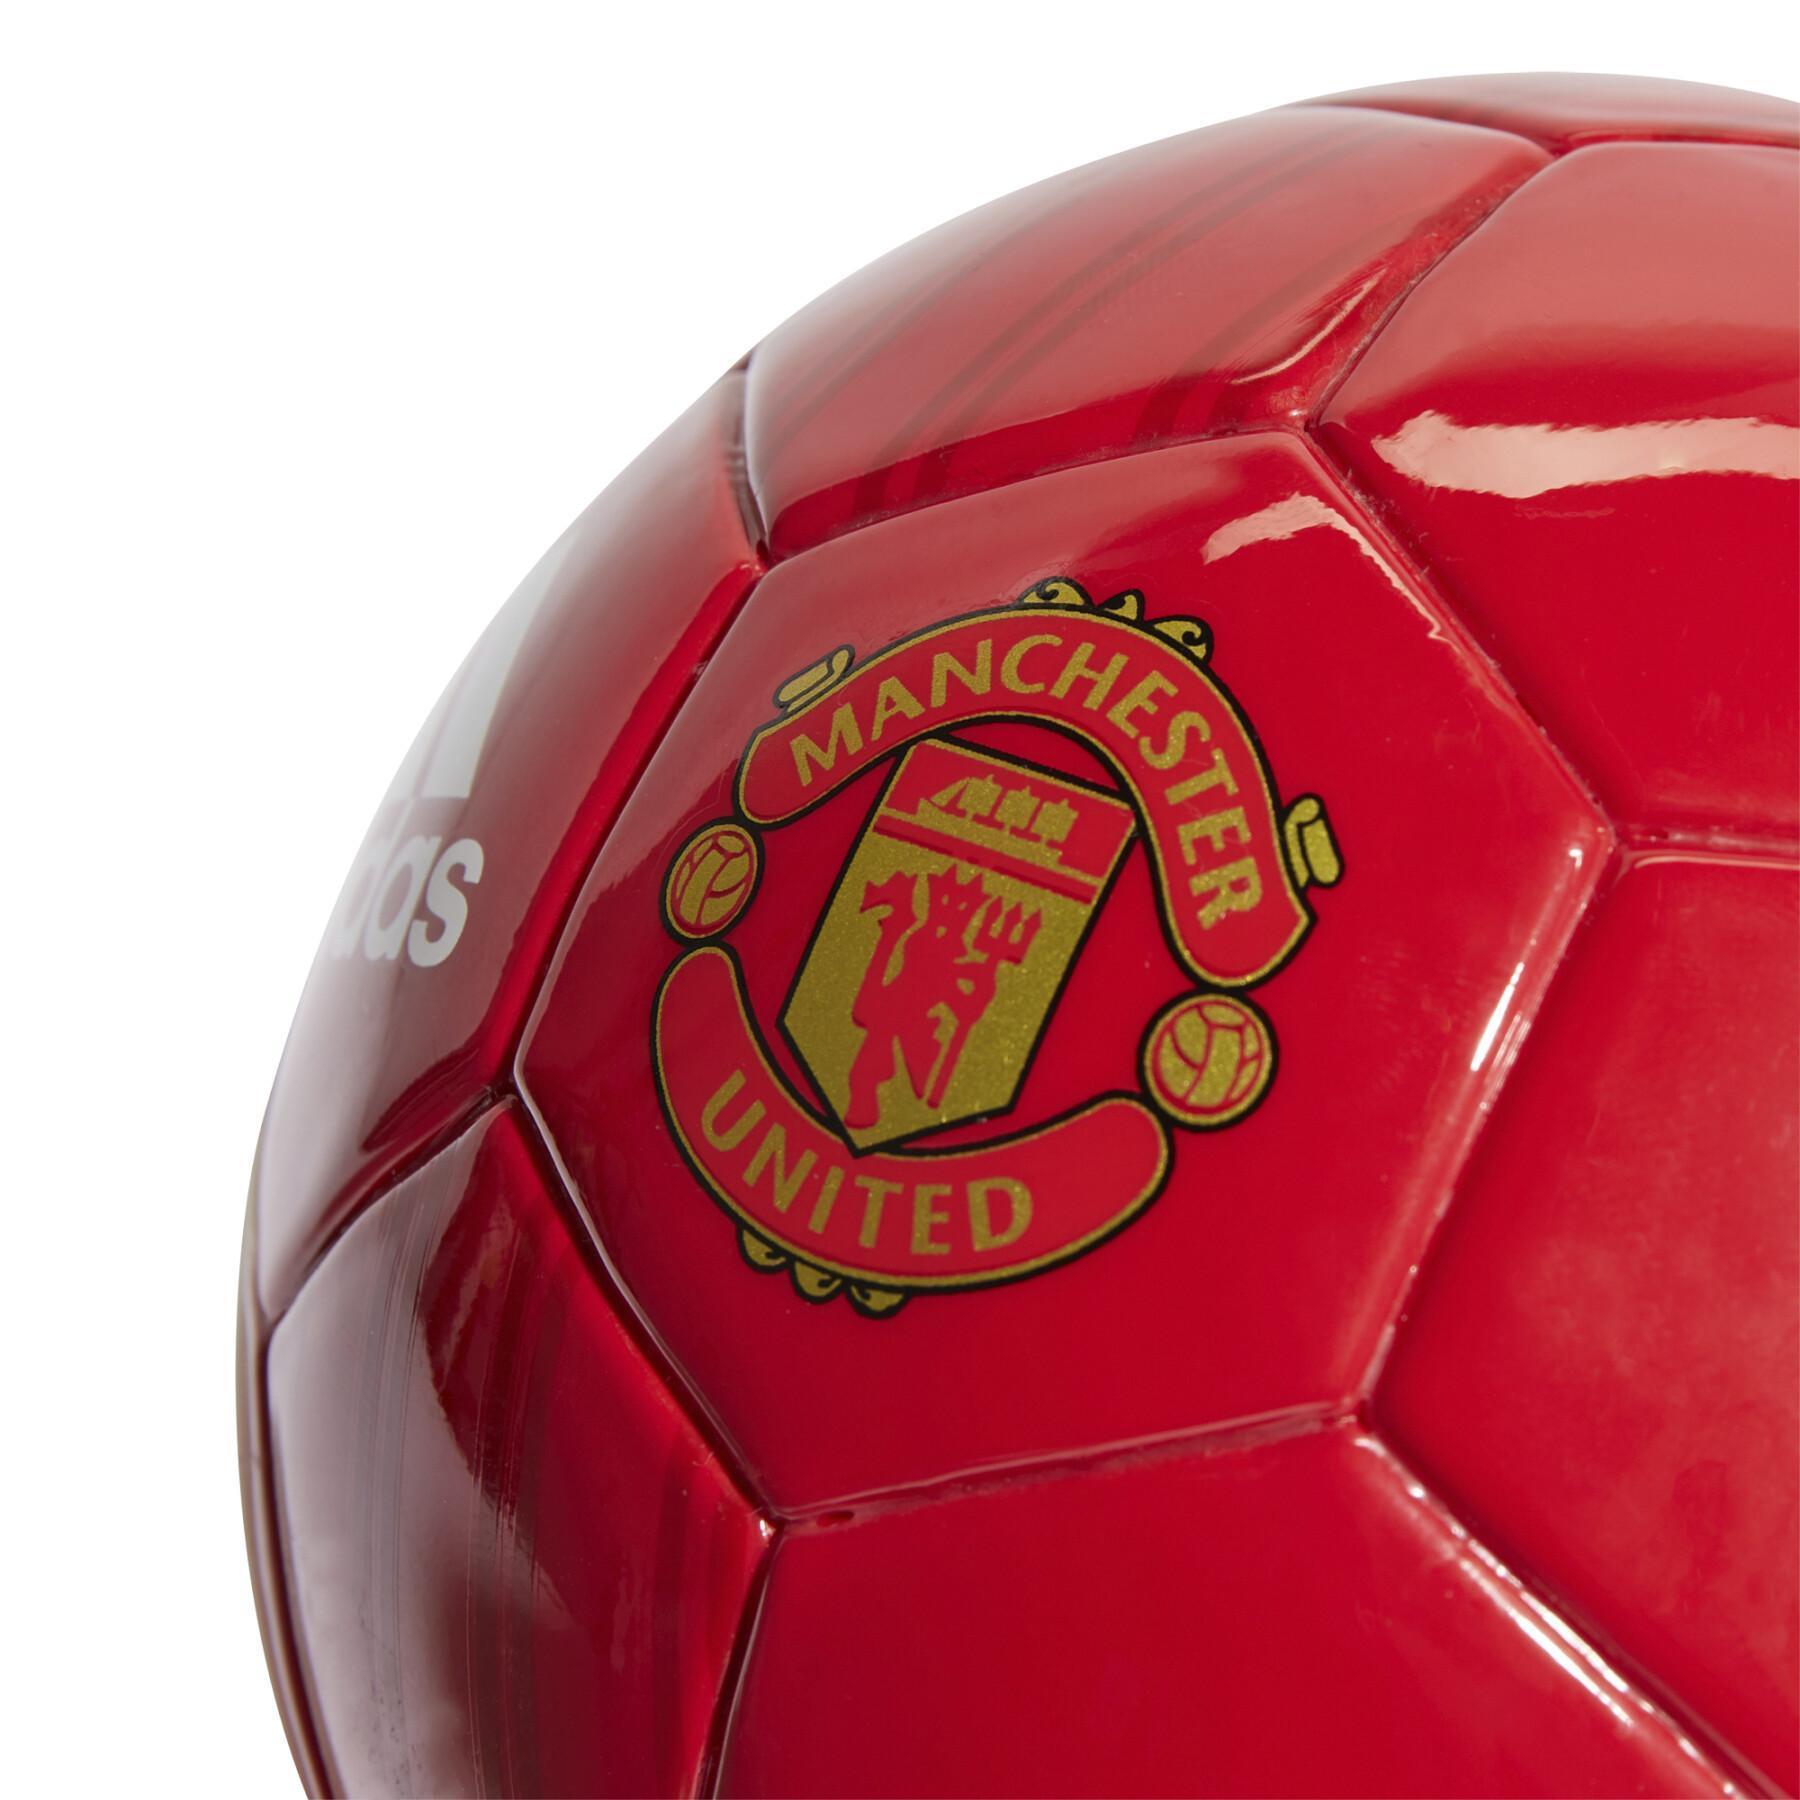 Mini ballon Domicile Manchester United